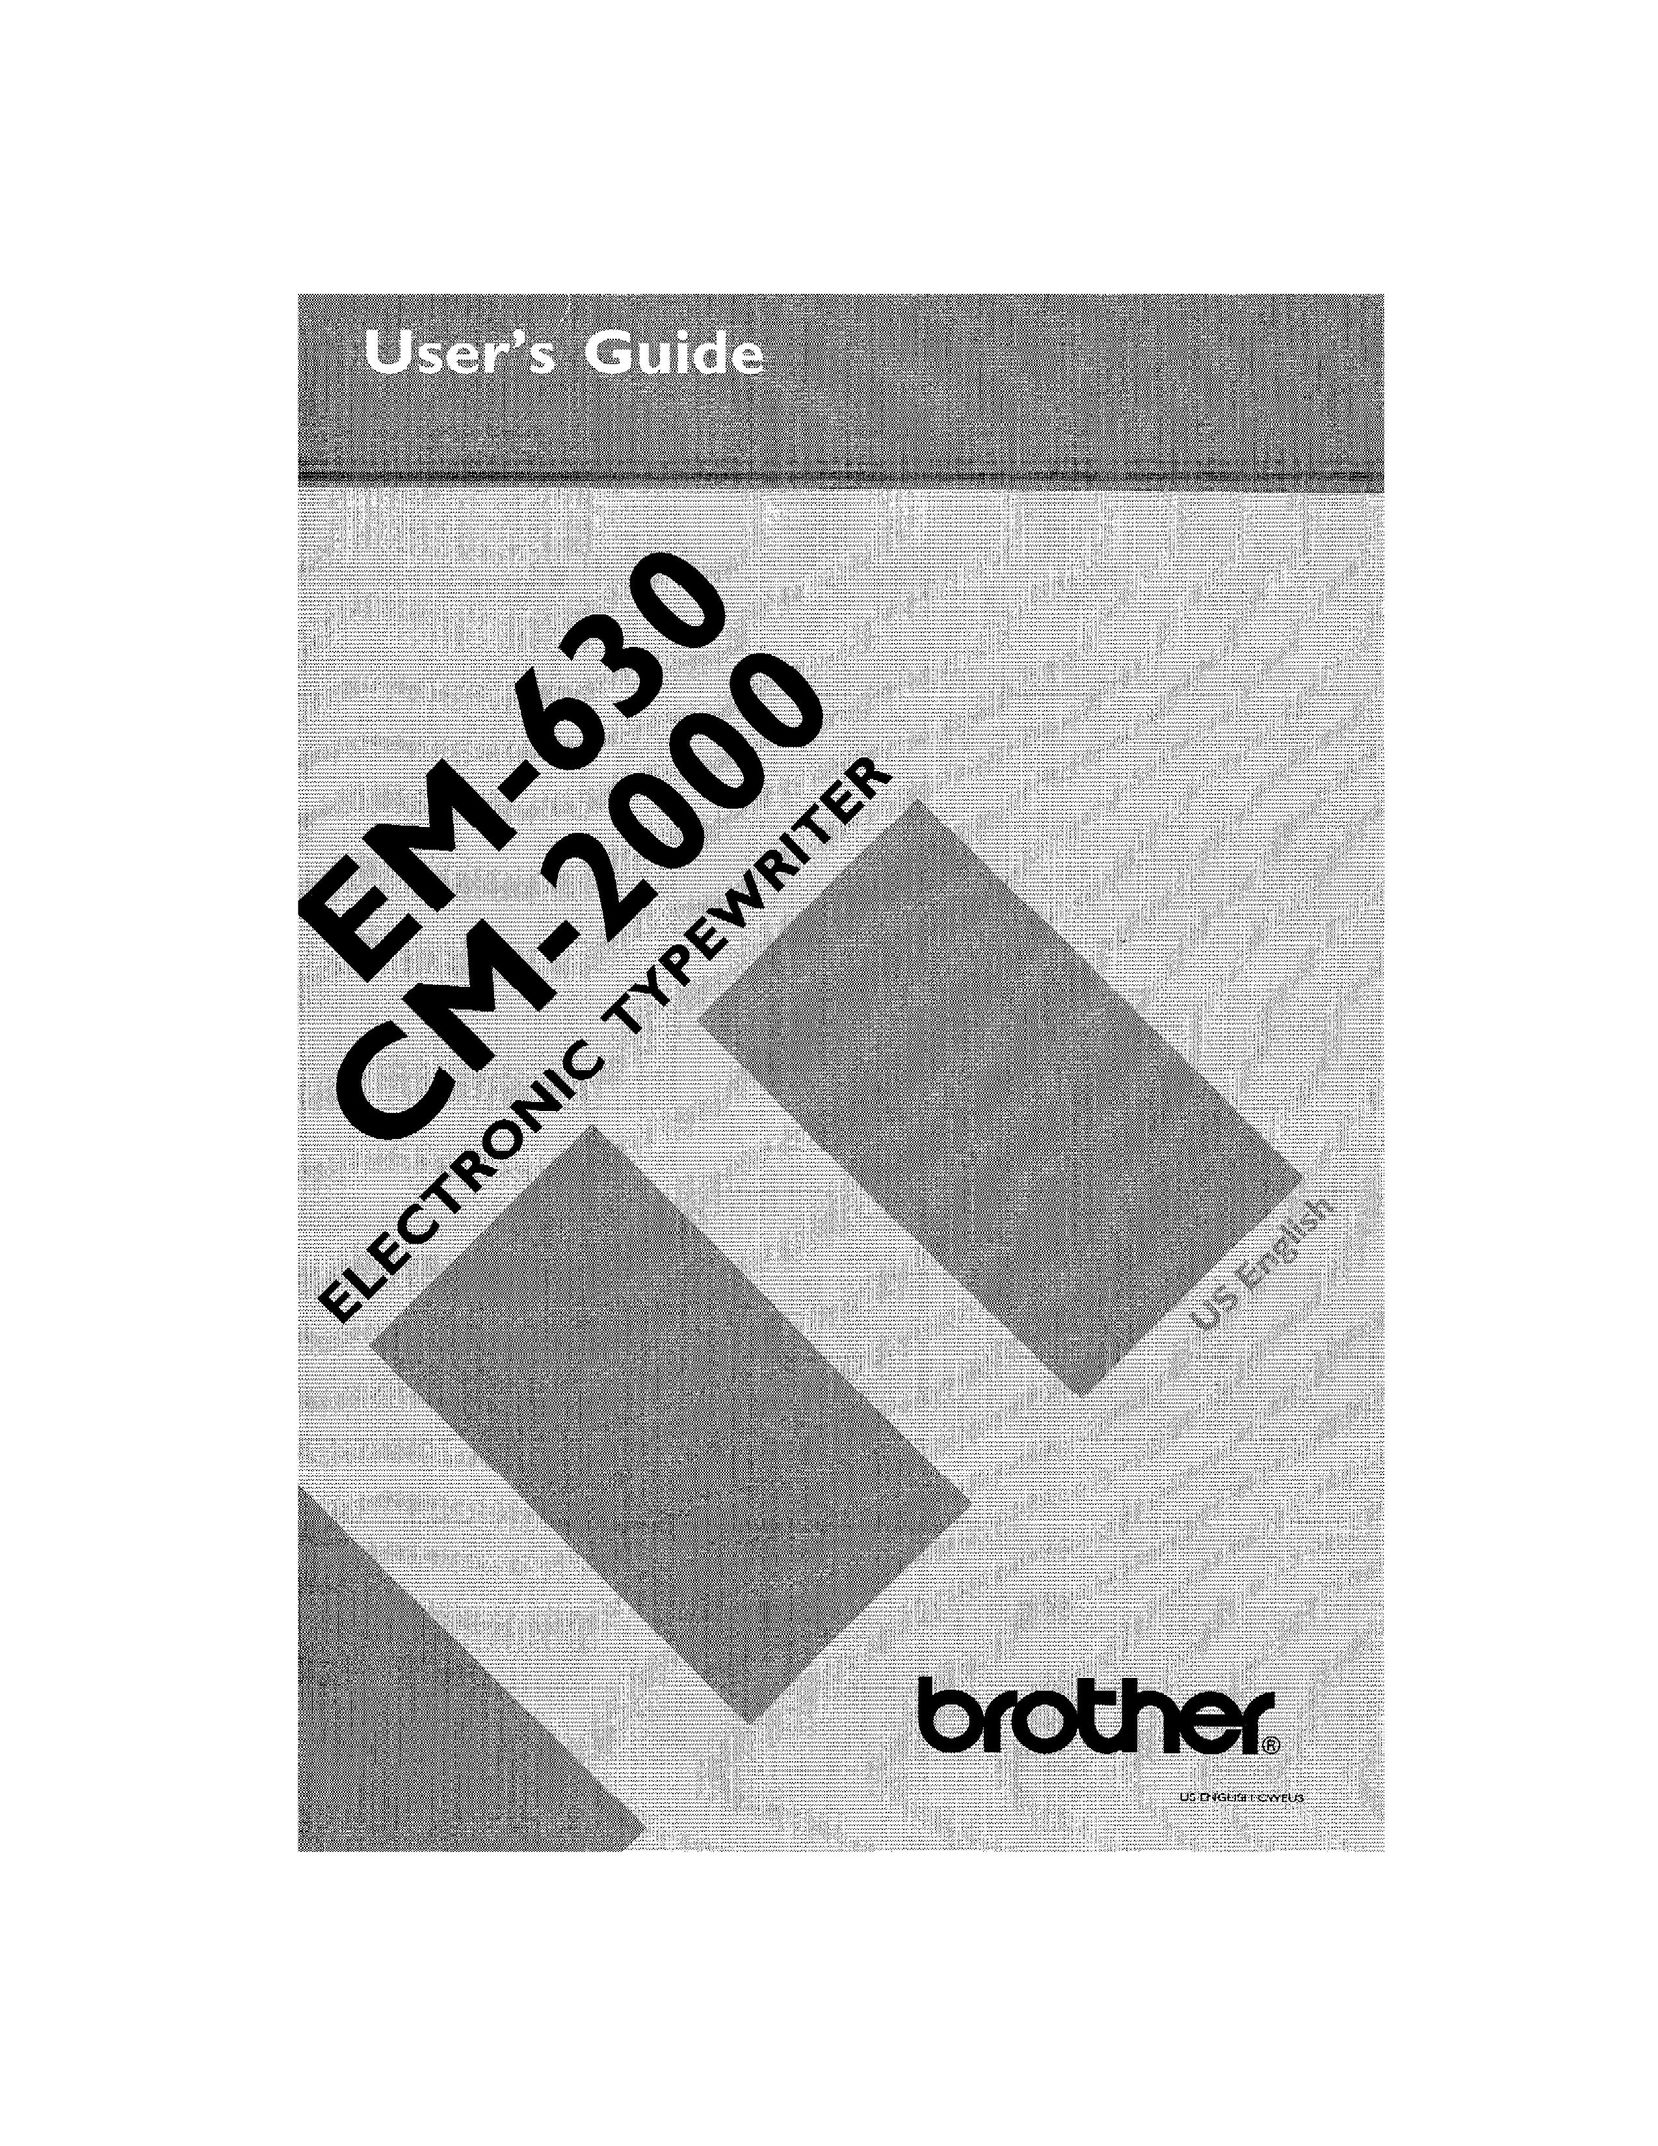 Brother EM-630 Typewriter User Manual